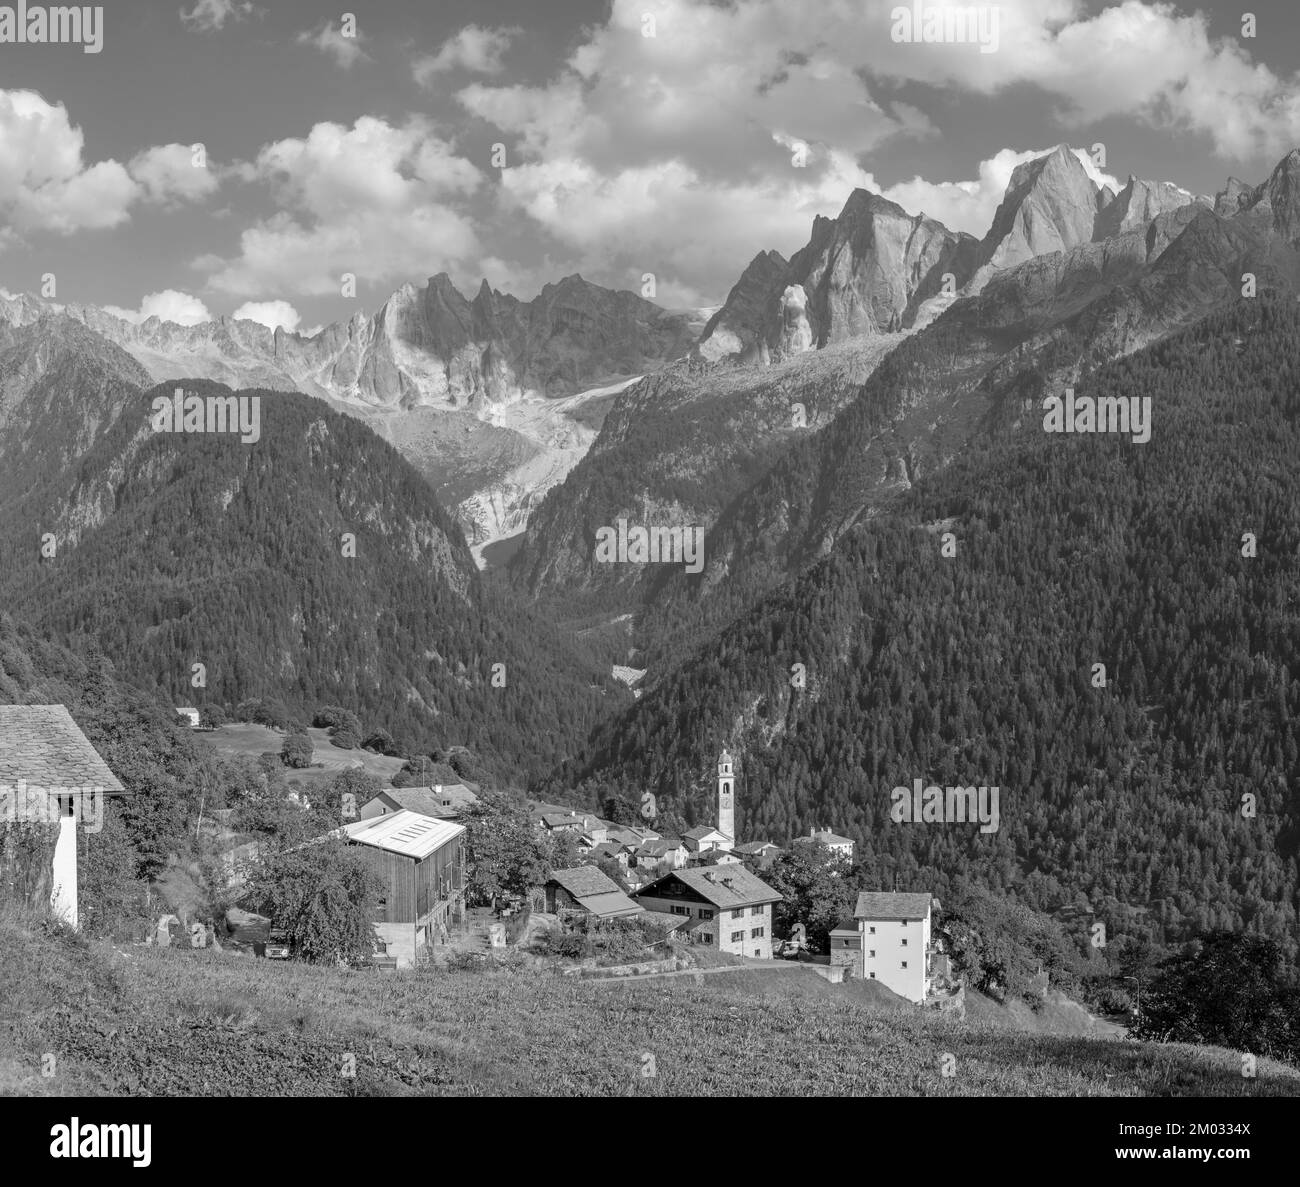 The Soglio village and Piz Badile, Pizzo Cengalo, and Sciora peaks in the Bregaglia range - Switzerland. Stock Photo